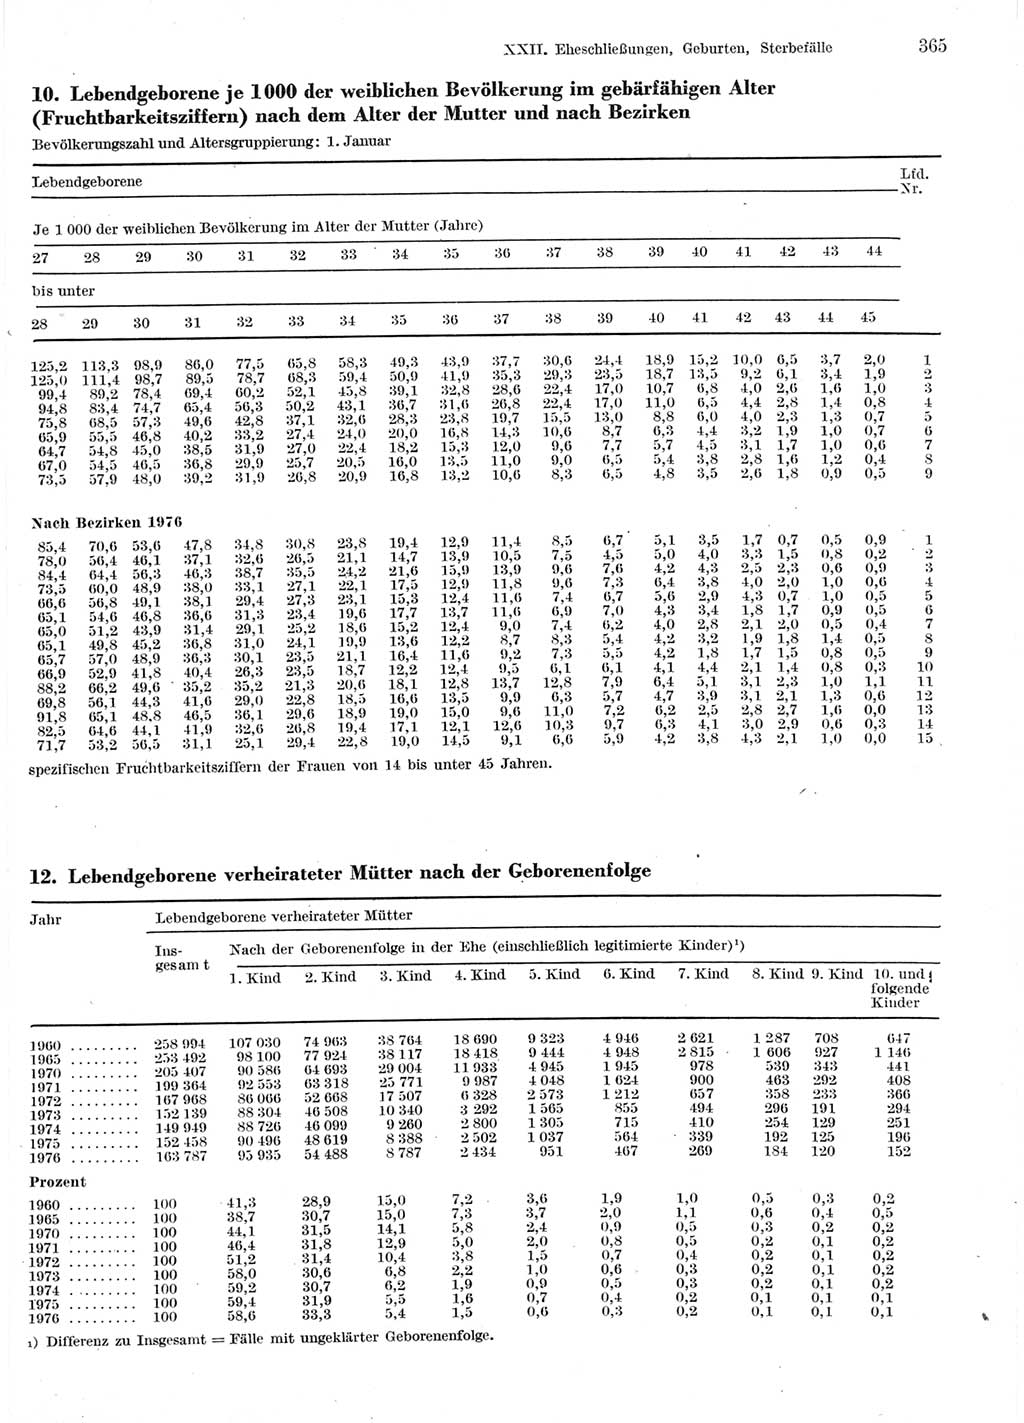 Statistisches Jahrbuch der Deutschen Demokratischen Republik (DDR) 1978, Seite 365 (Stat. Jb. DDR 1978, S. 365)